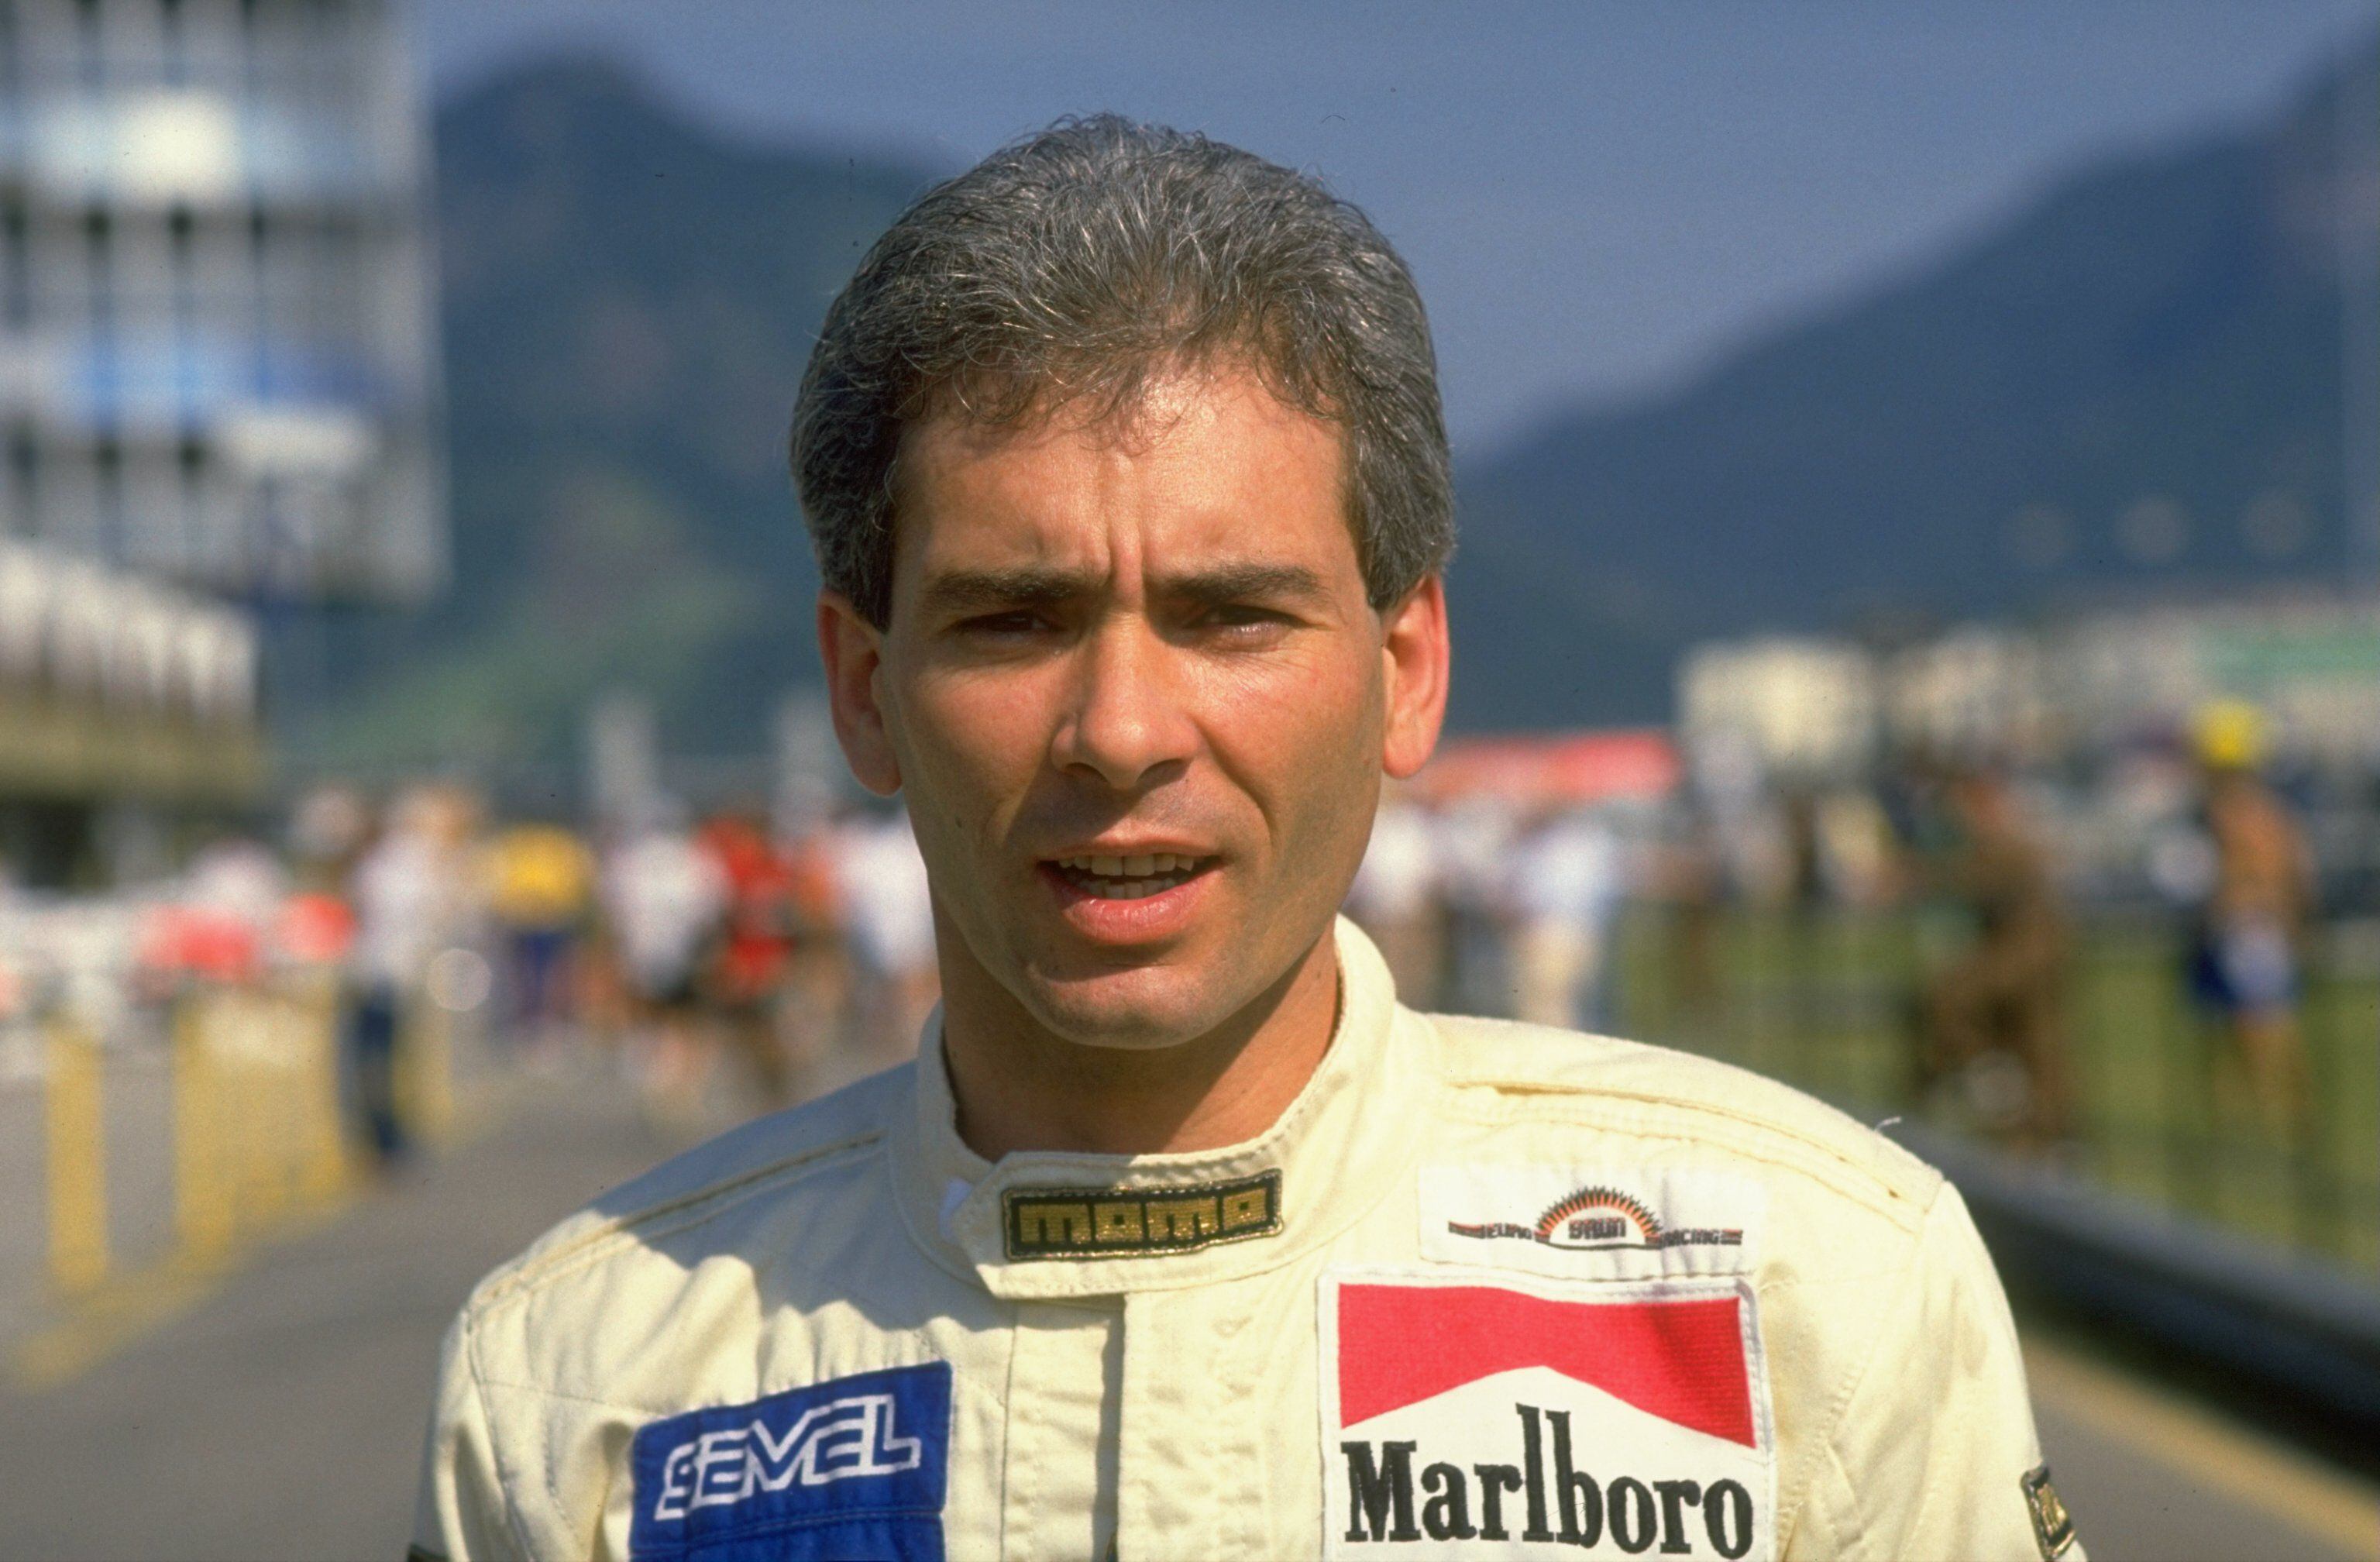 Oscar Larrauri en Jacarepaguá, Brasil, donde debutó la Fórmula 1 (Getty Images) (Simon Bruty/)Las frías estadísticas dicen que Oscar Rubén Larrauri corrió ocho Grandes Premios de Fórmula 1 en 